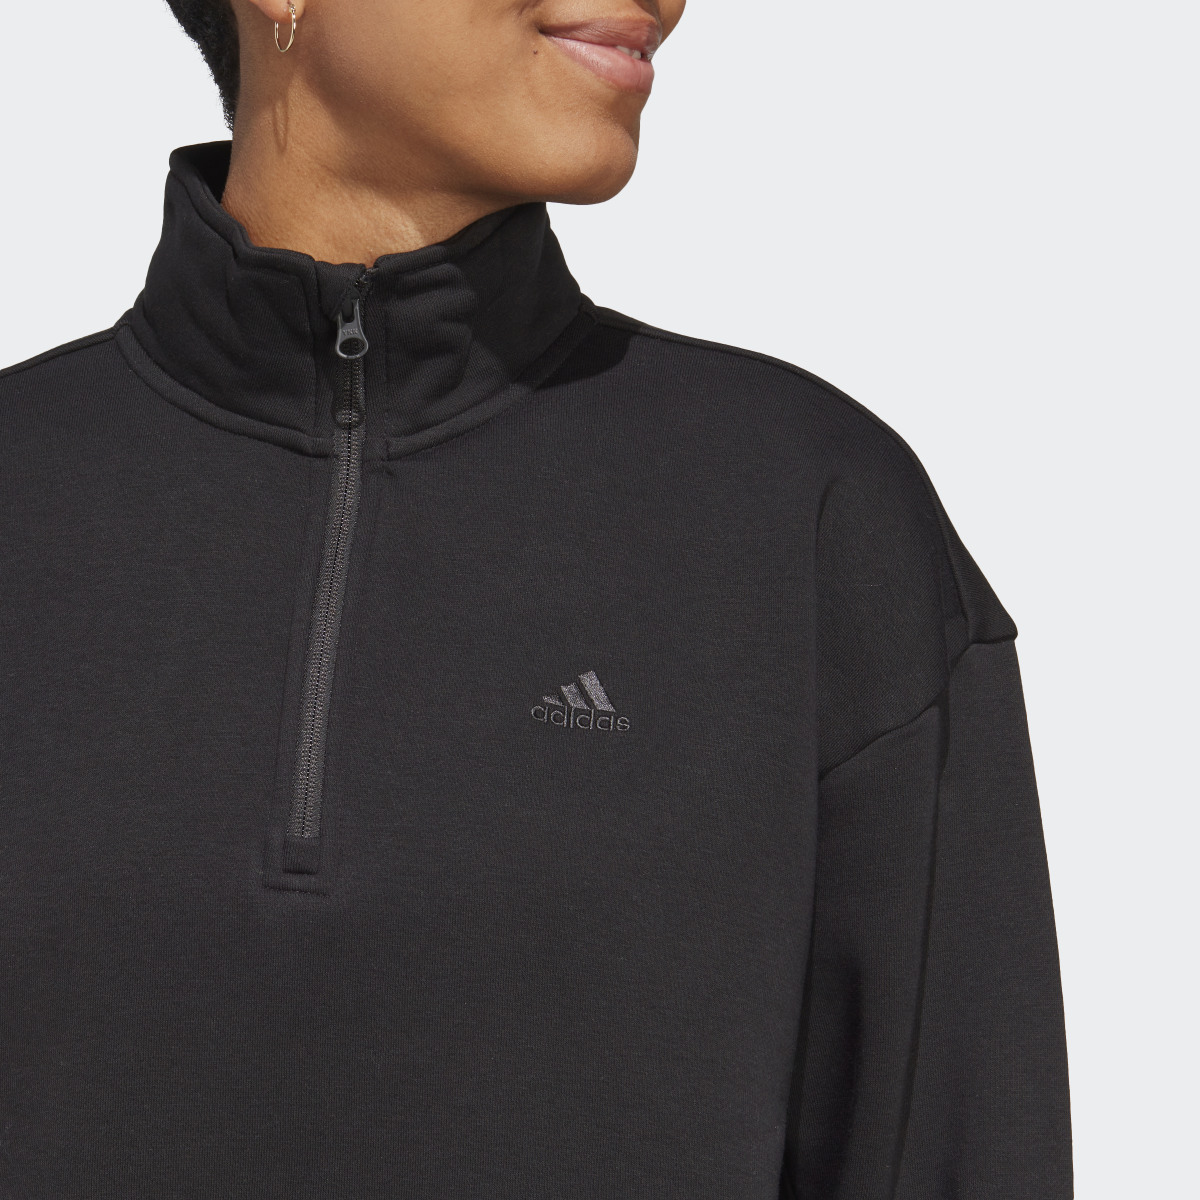 Adidas ALL SZN Fleece Graphic Quarter-Zip Sweatshirt. 6